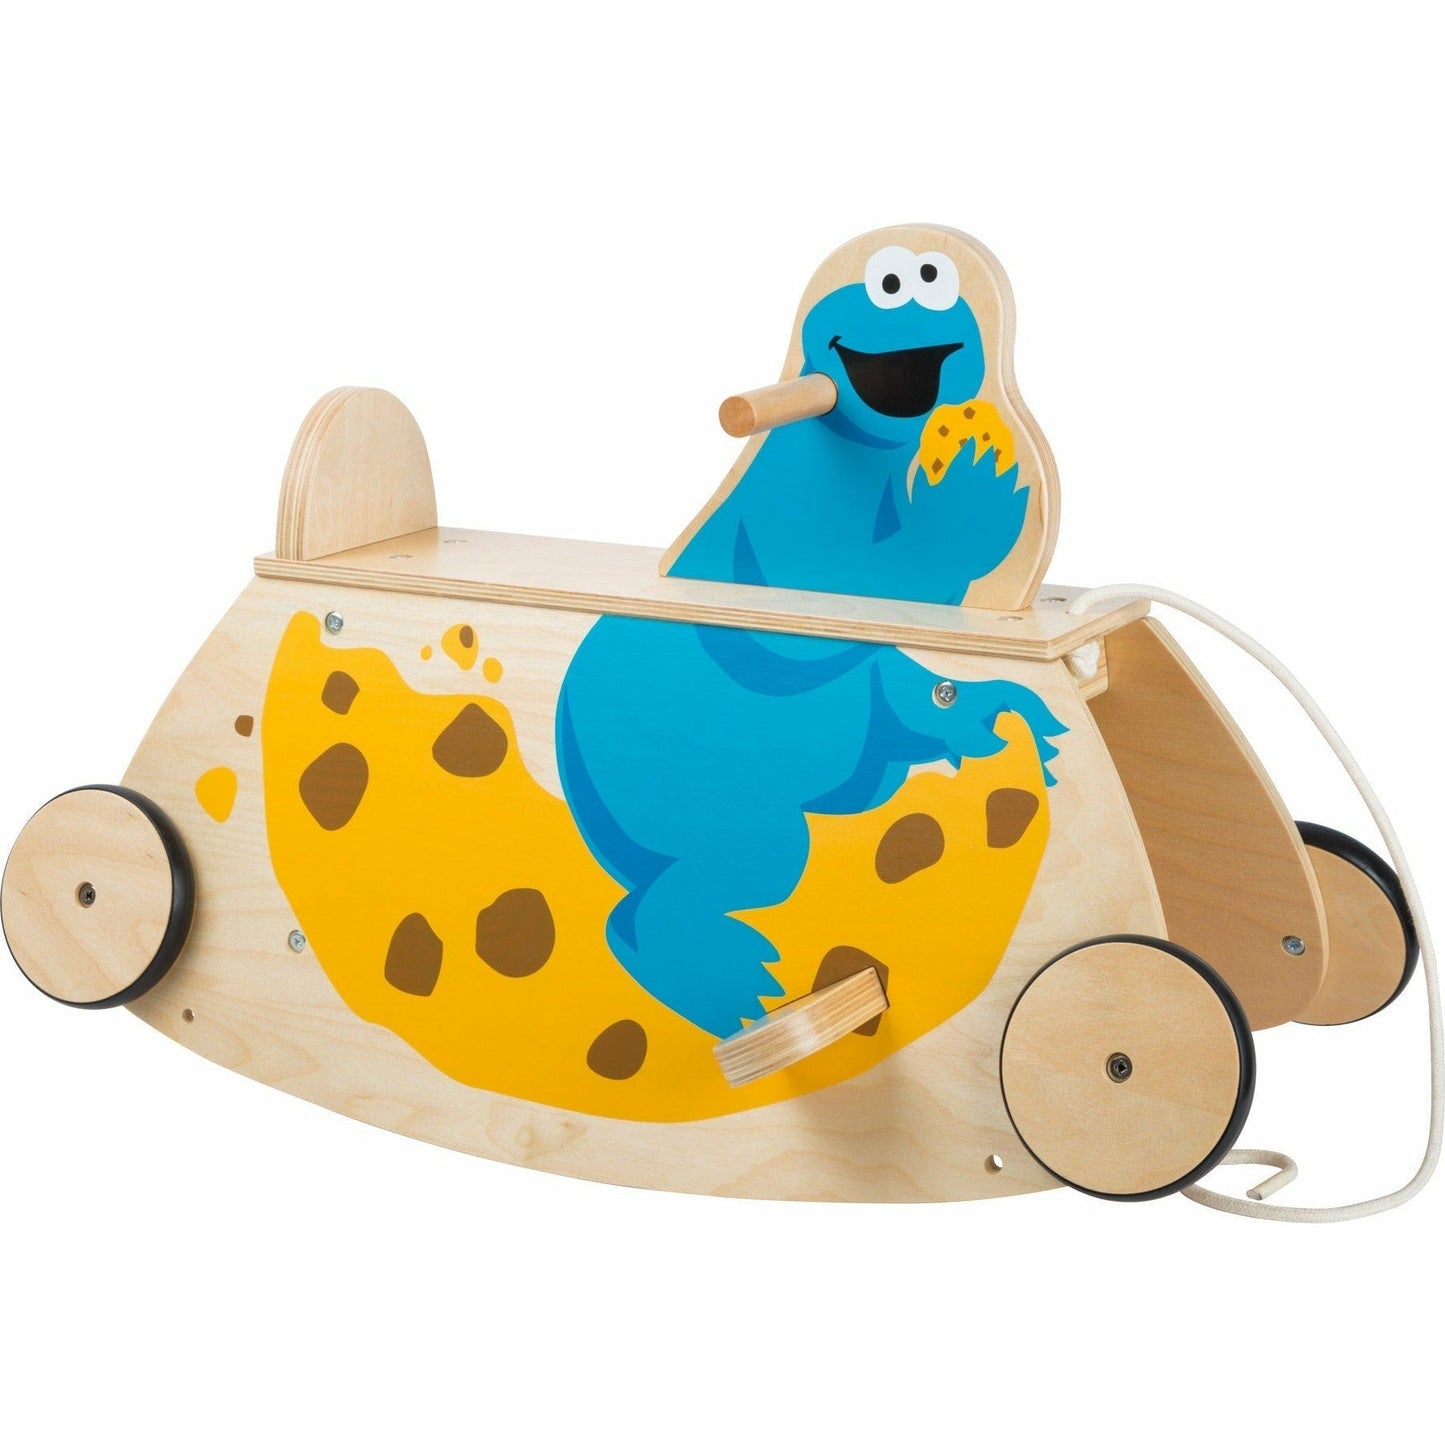 Personalisierte Schaukelwippe mit Rollen Schaukel und Roller in einem Holzspielzeug Sesamstrasse Kinder ab 12 Monaten.